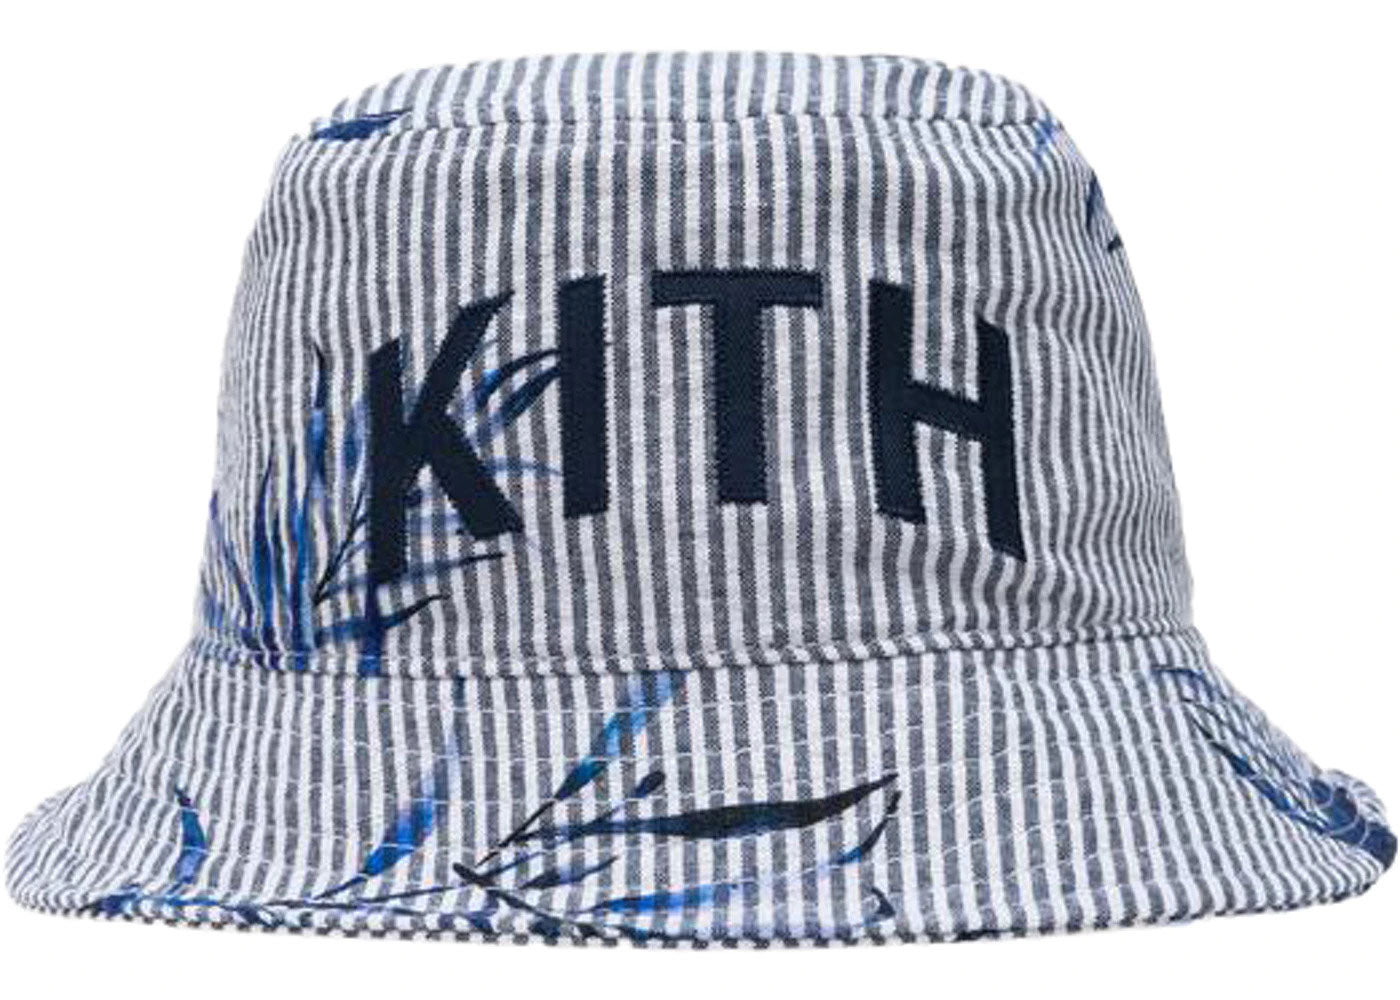 低価国産kith floral cap 帽子